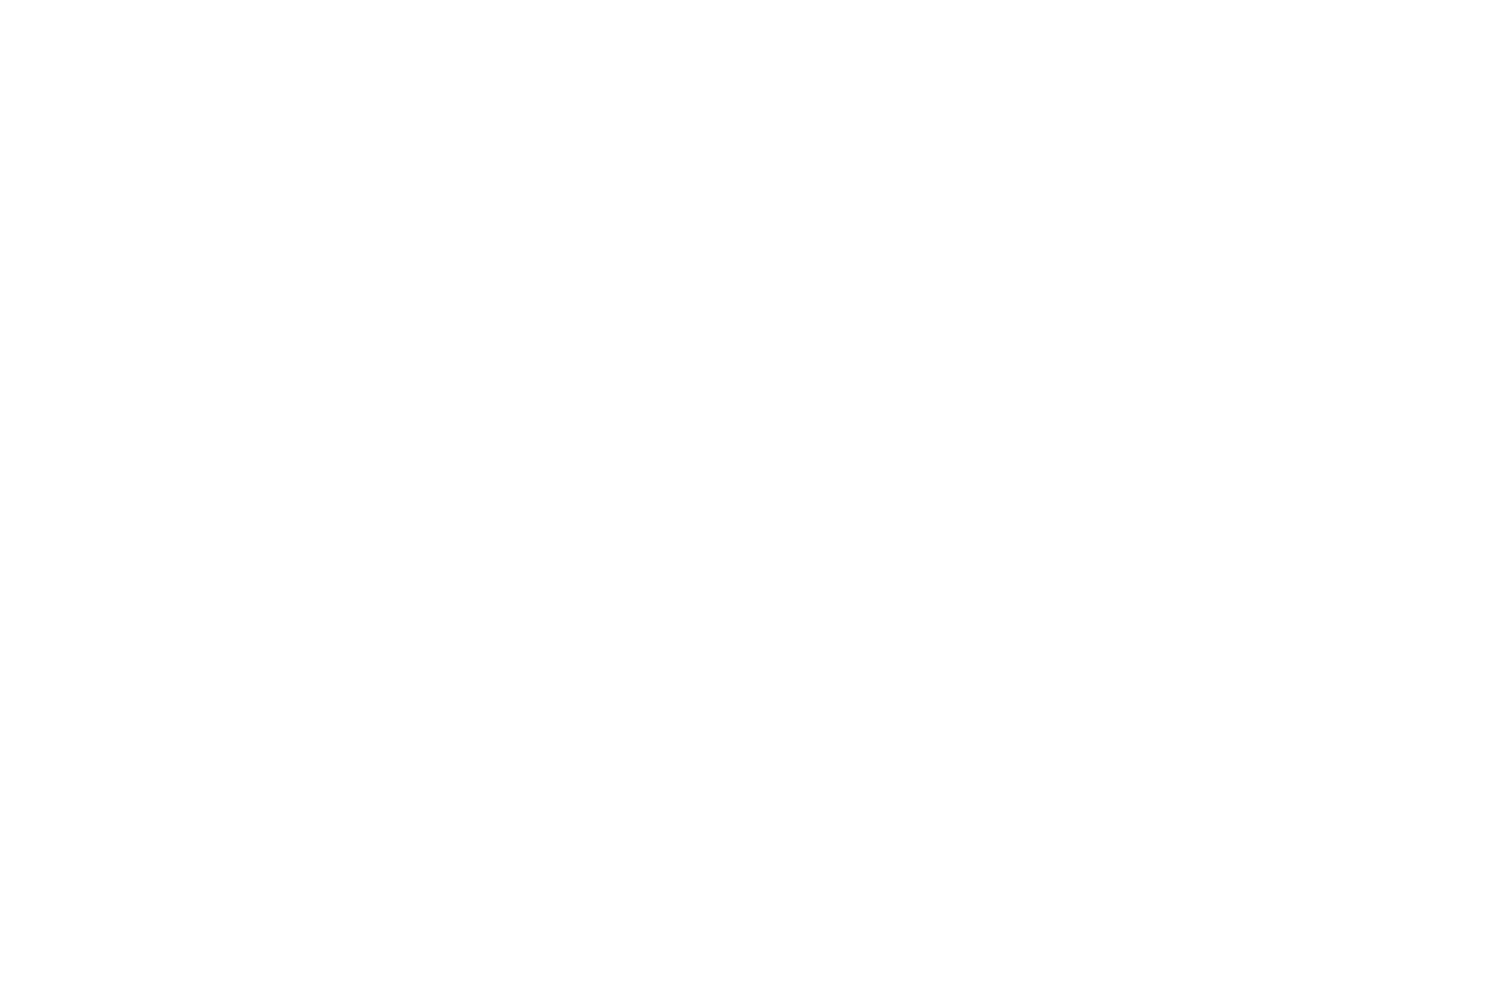 Matthieu.H